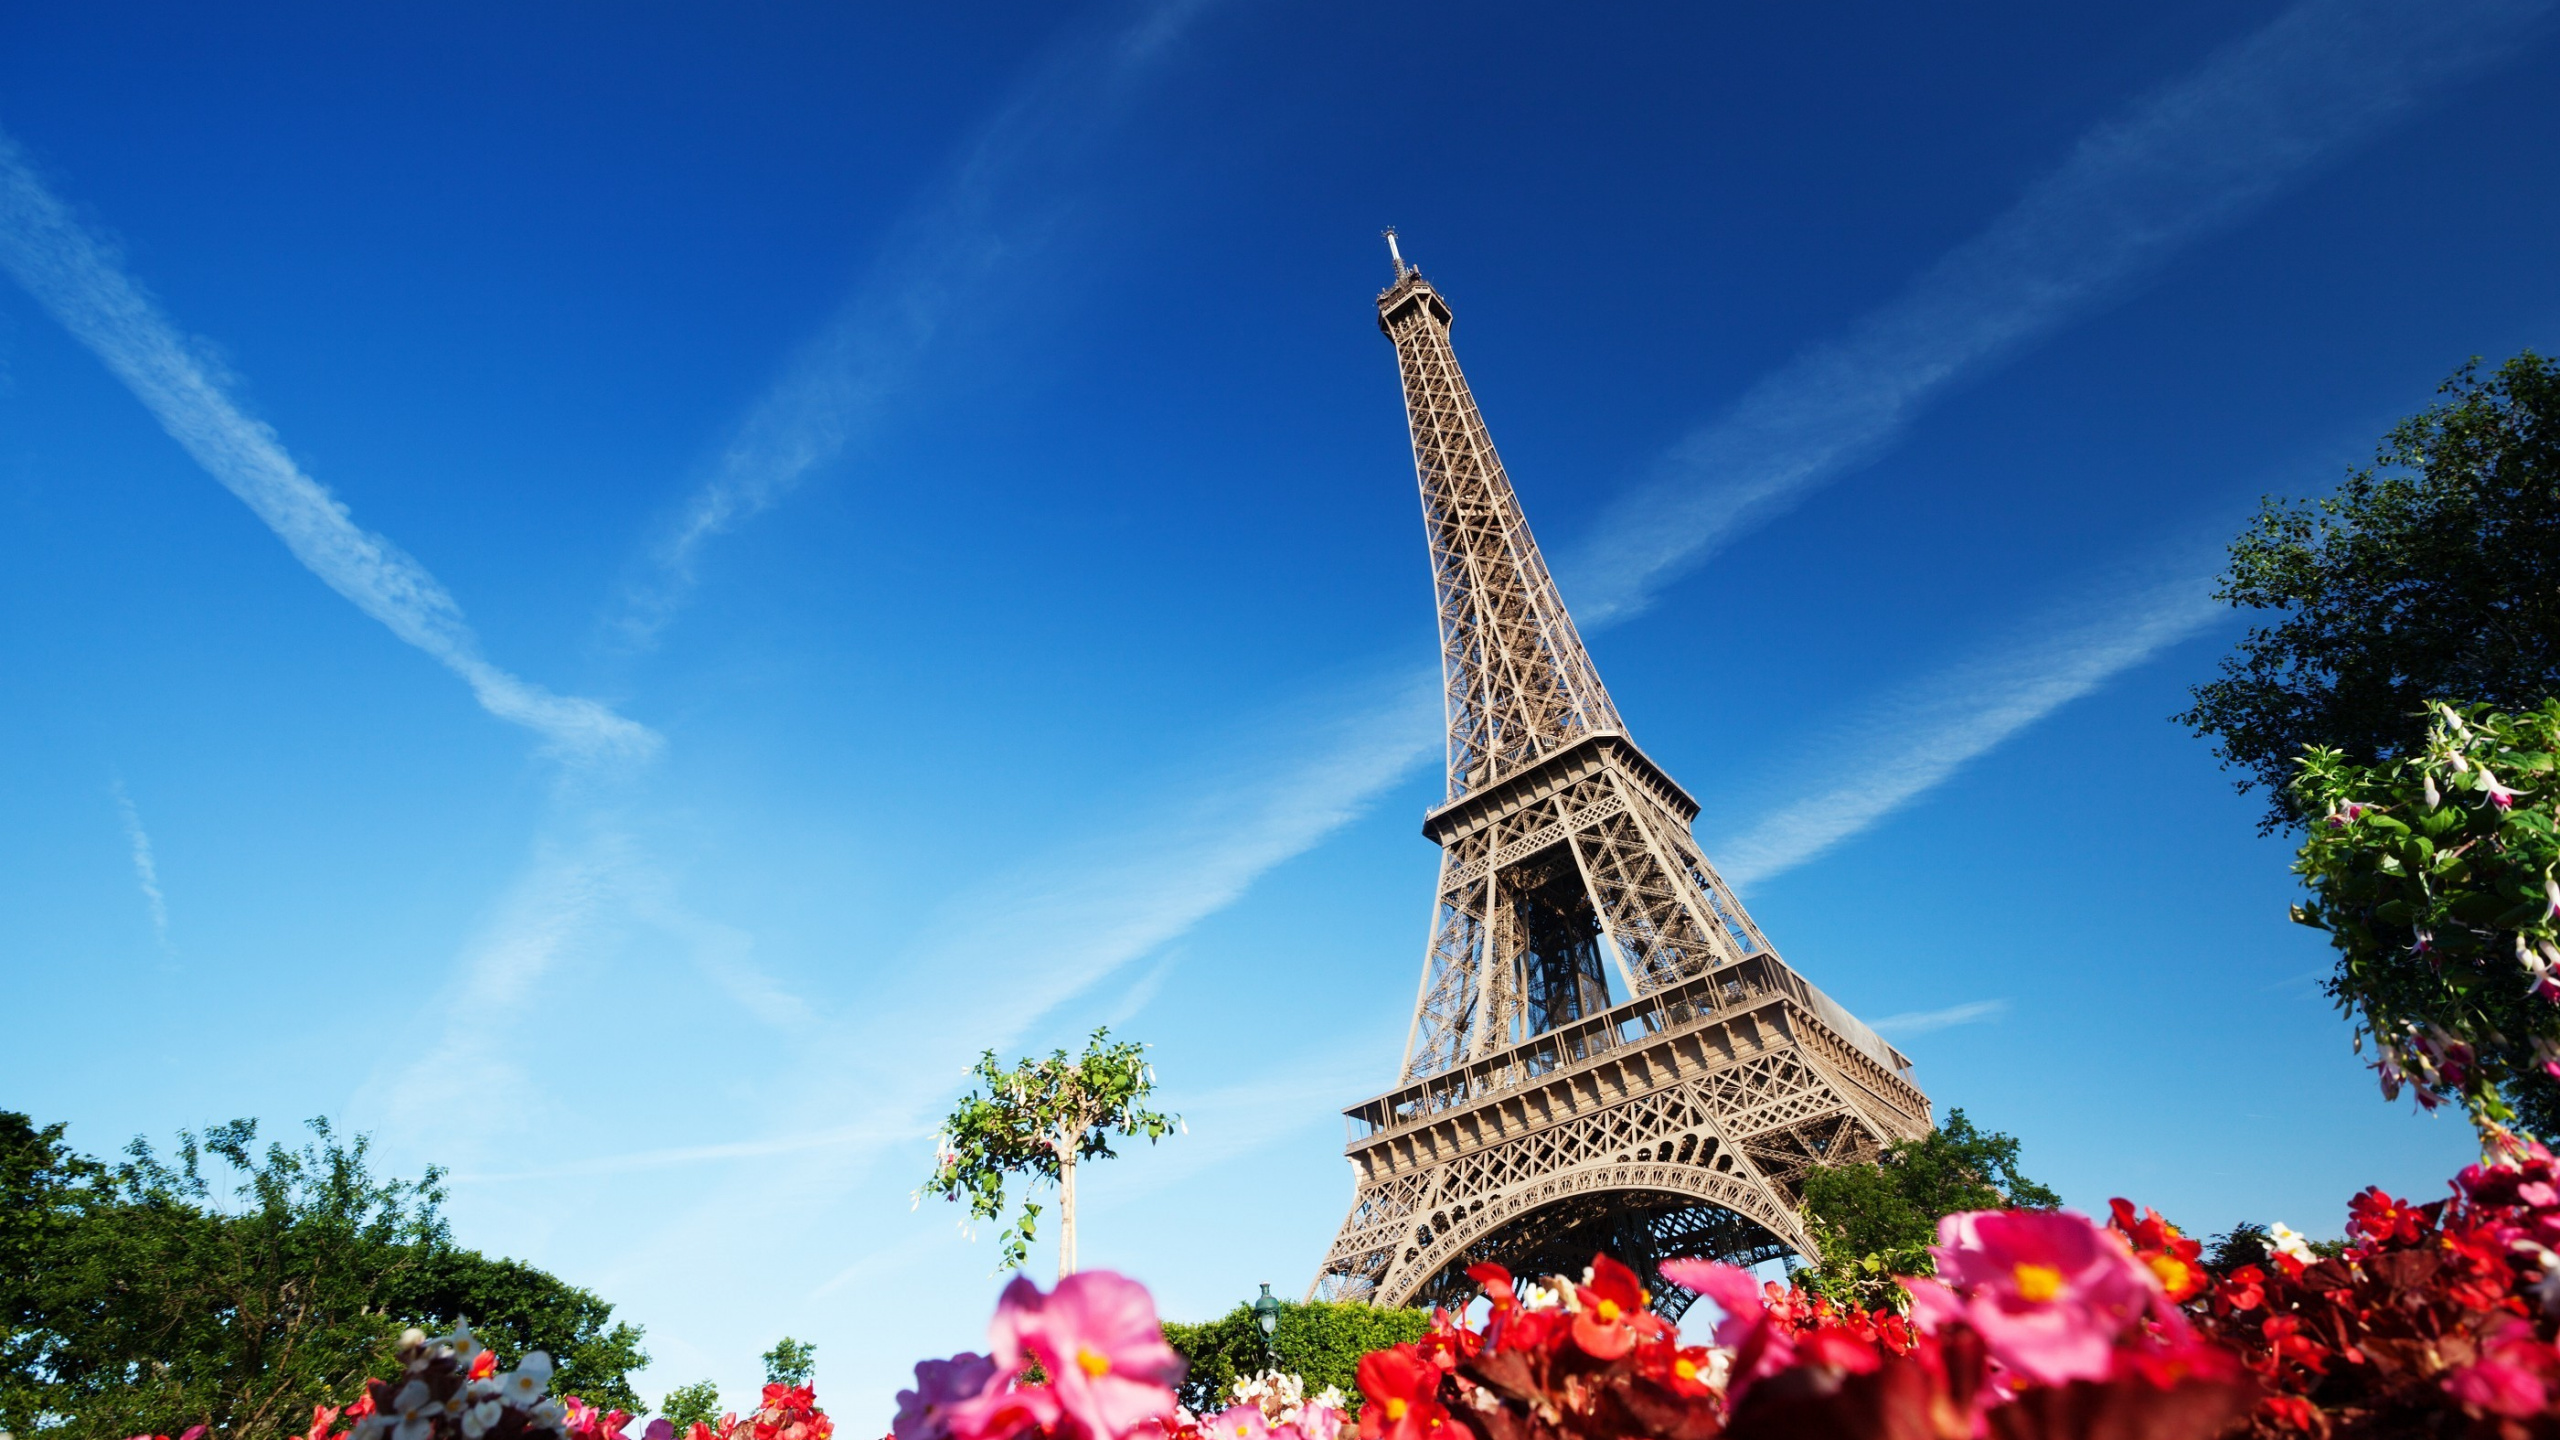 Tour Eiffel Sous Ciel Bleu Pendant la Journée. Wallpaper in 2560x1440 Resolution